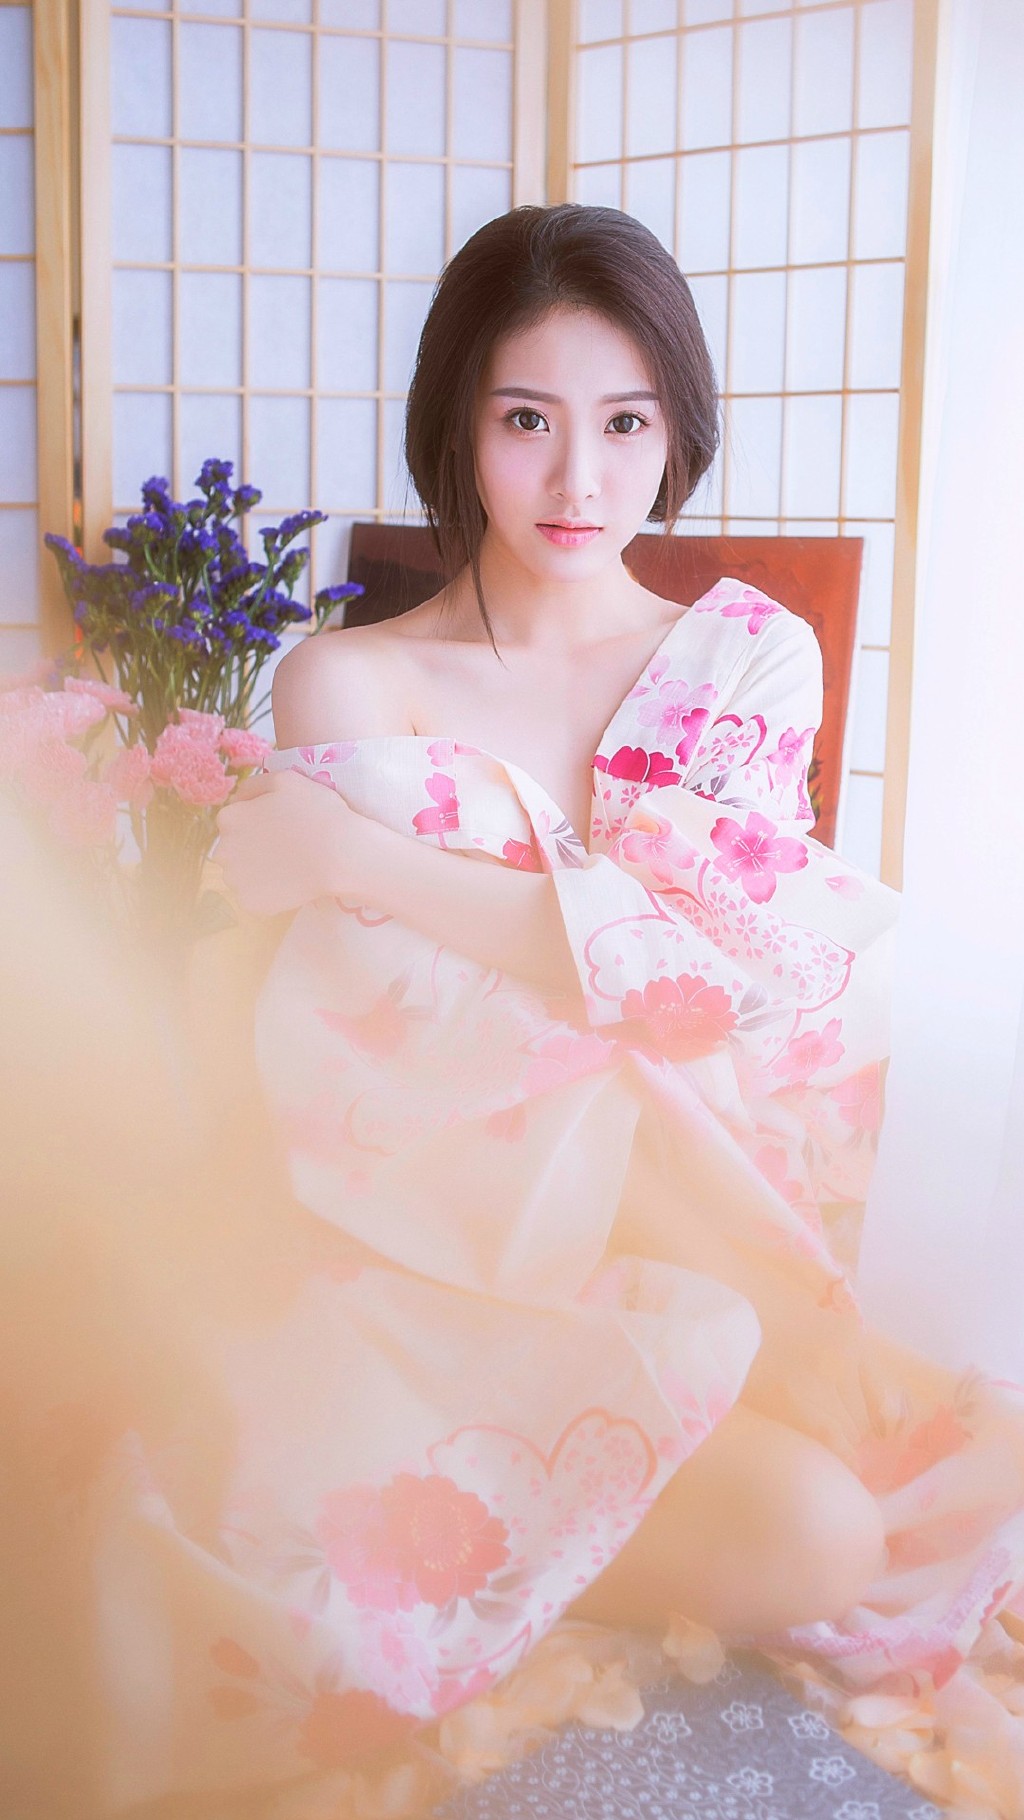 日本和服清纯美女玩性感秀美背